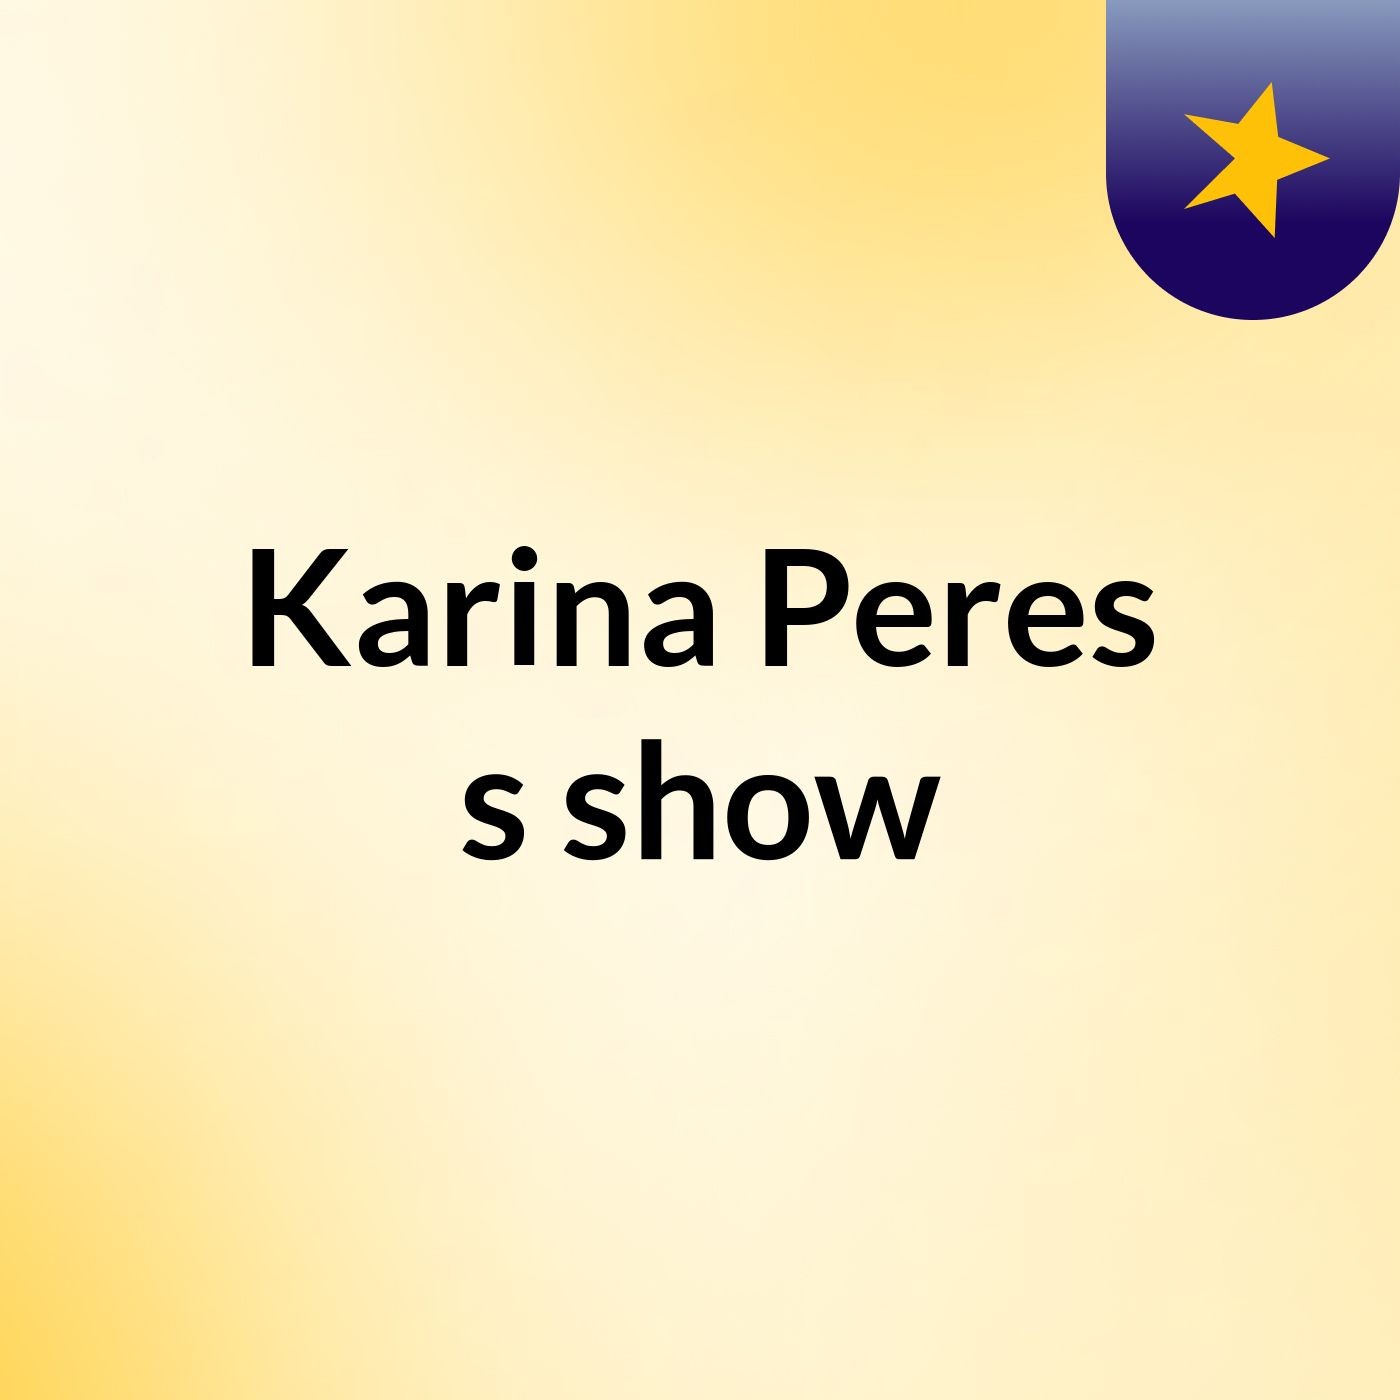 Karina Peres's show